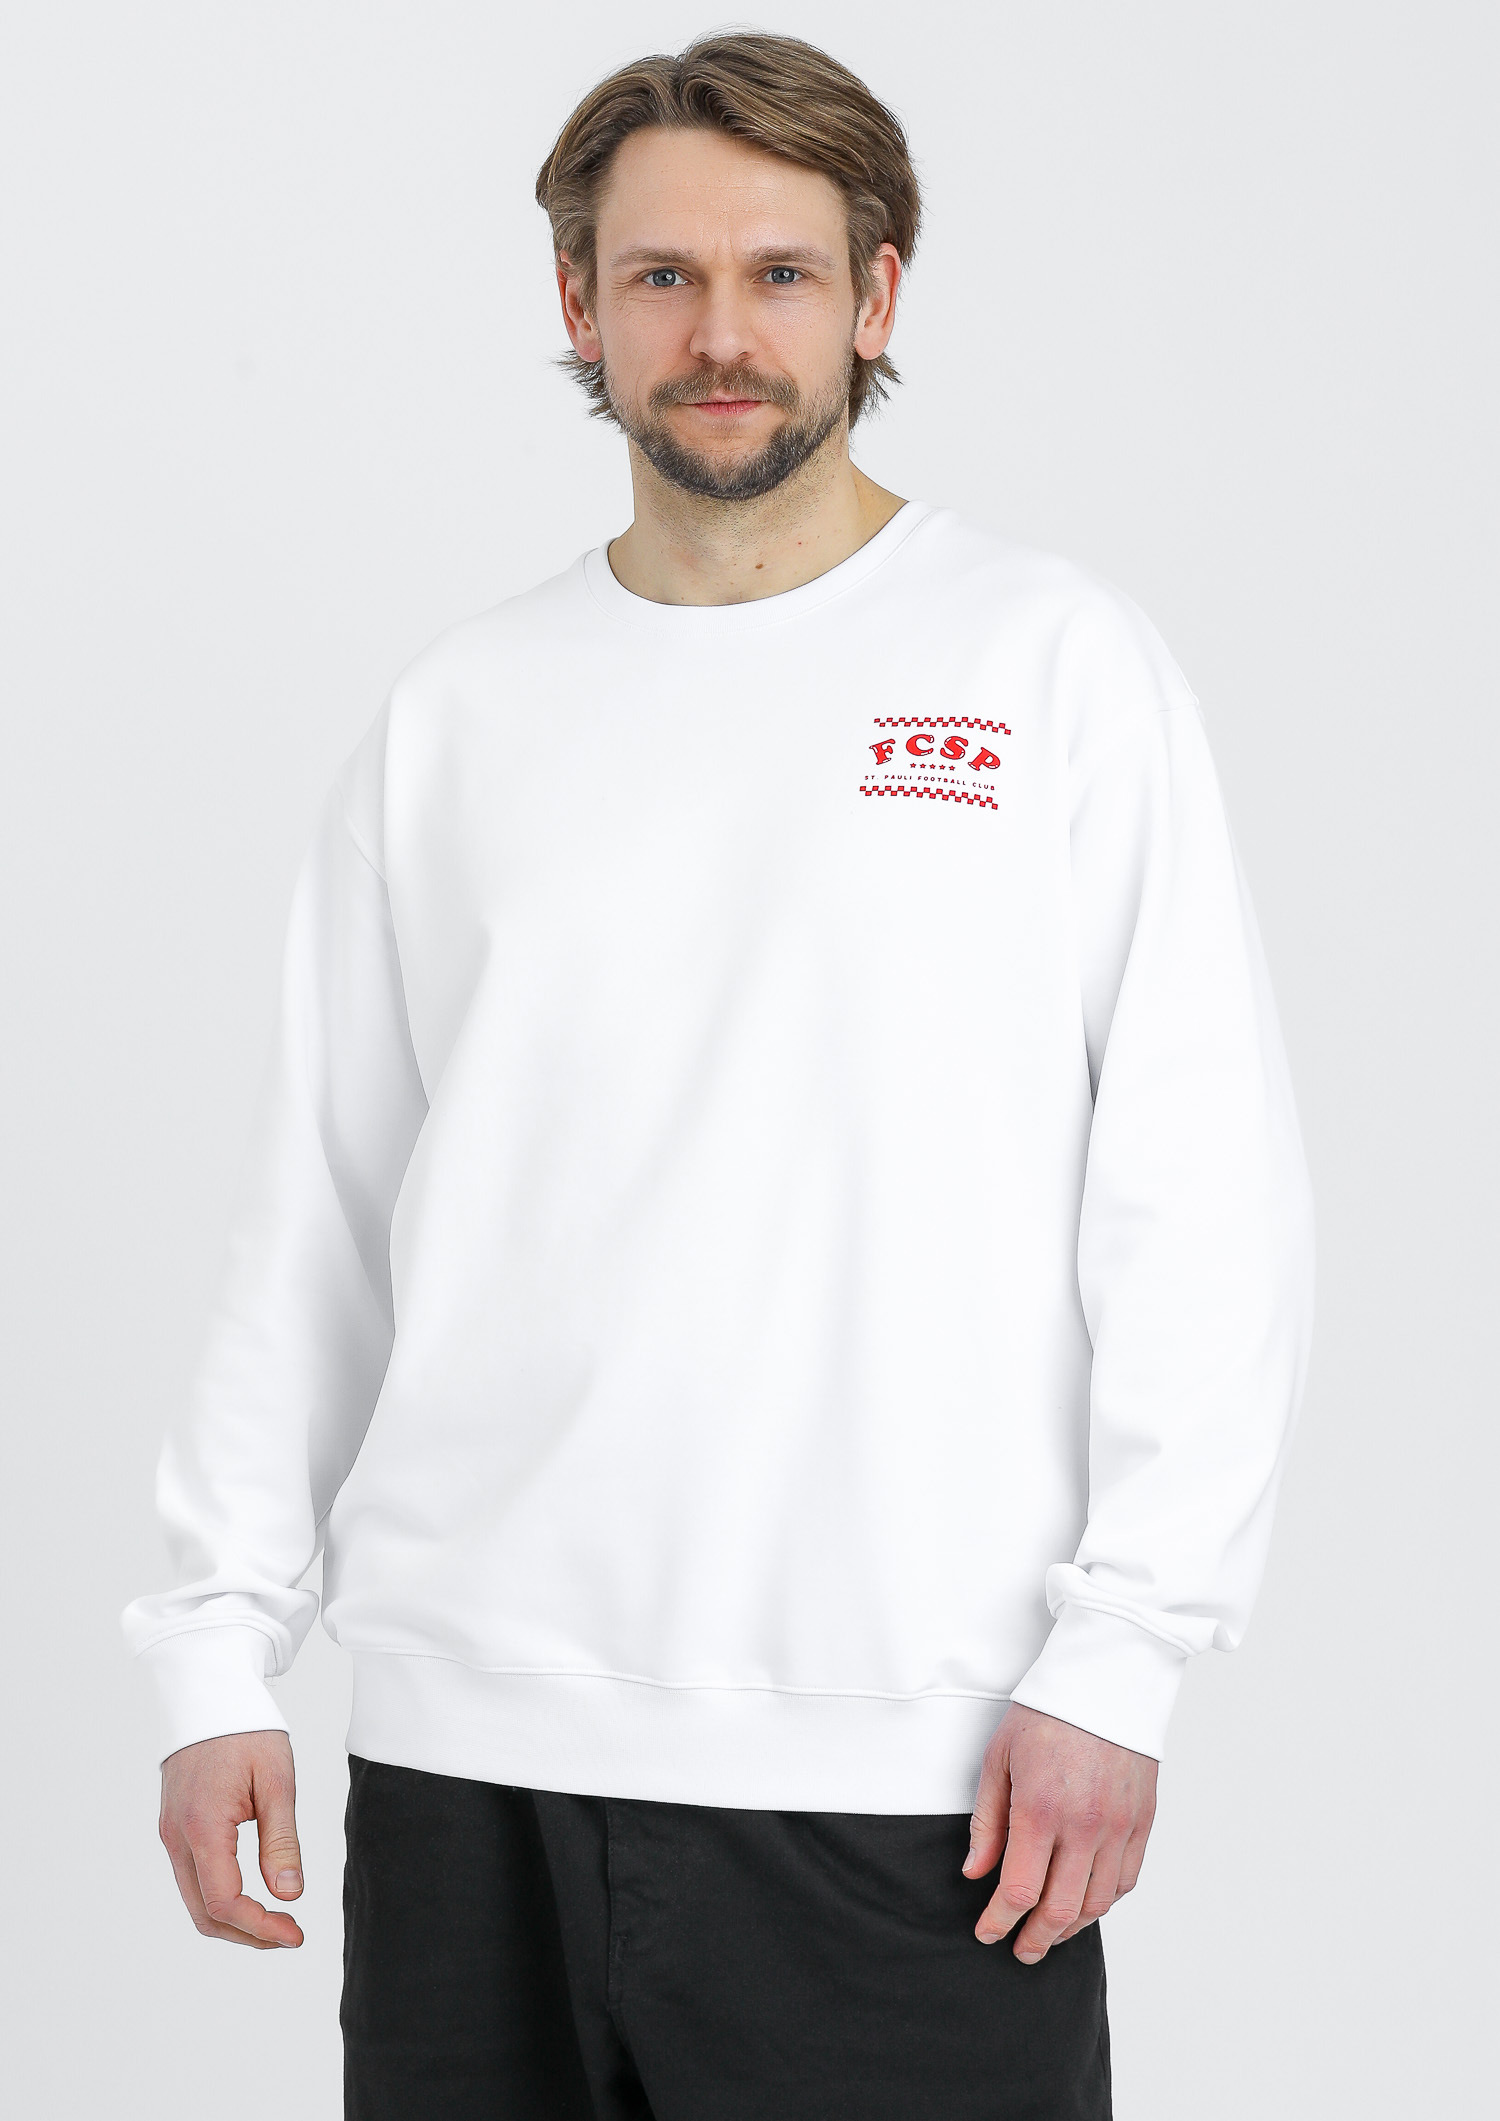 Sweatshirt "Pizza Club" Sankt Pauli